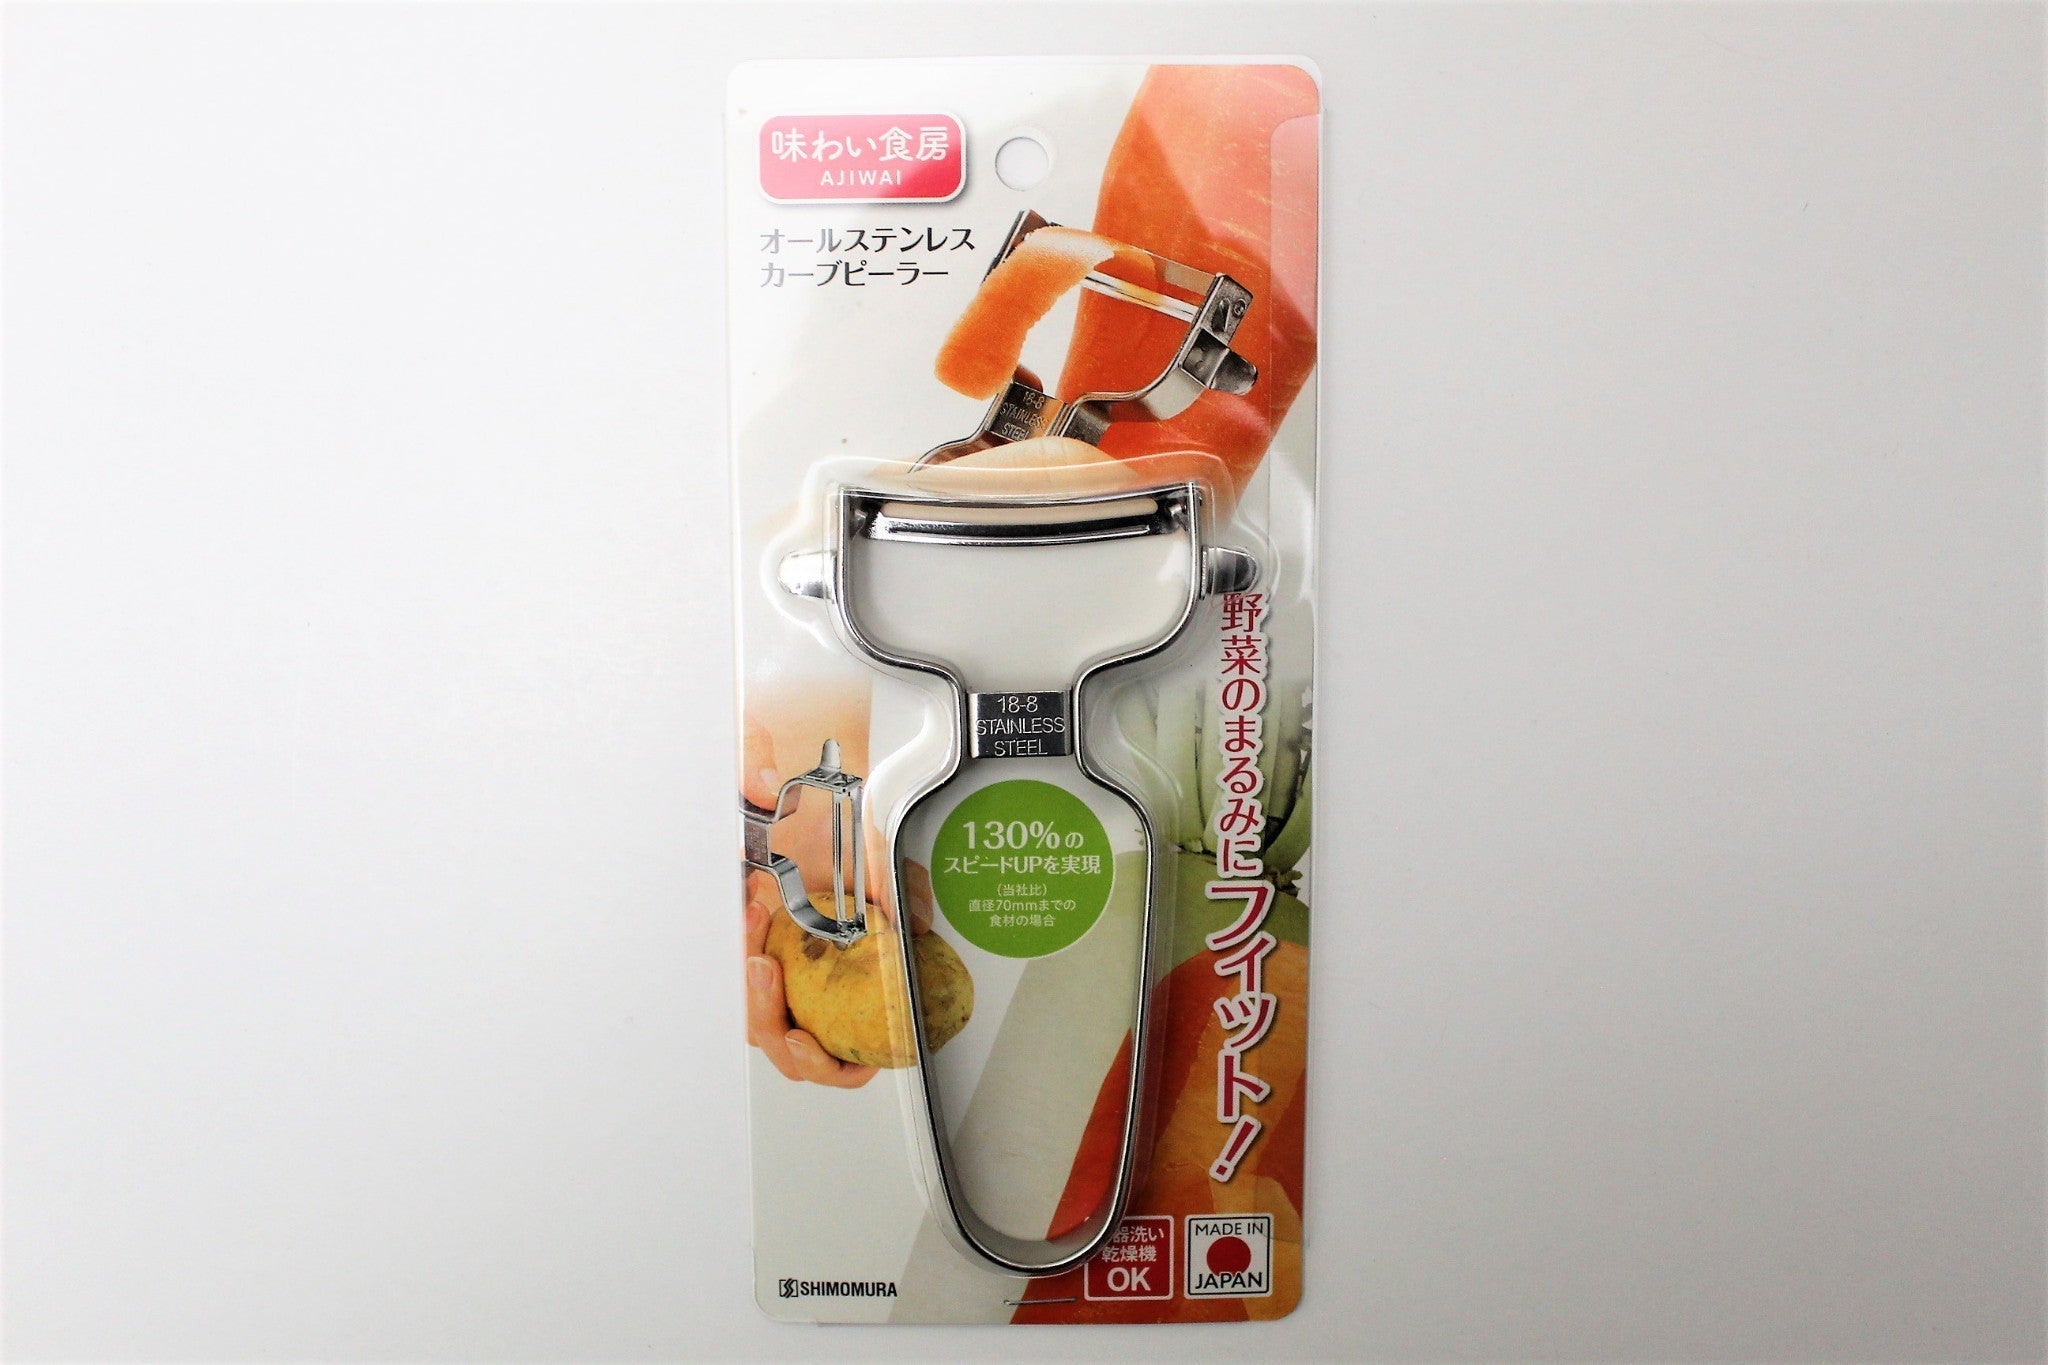 Shimomura Rapid Peeler Stainless Curved Blade Vegetable Peeler by Japanese Taste